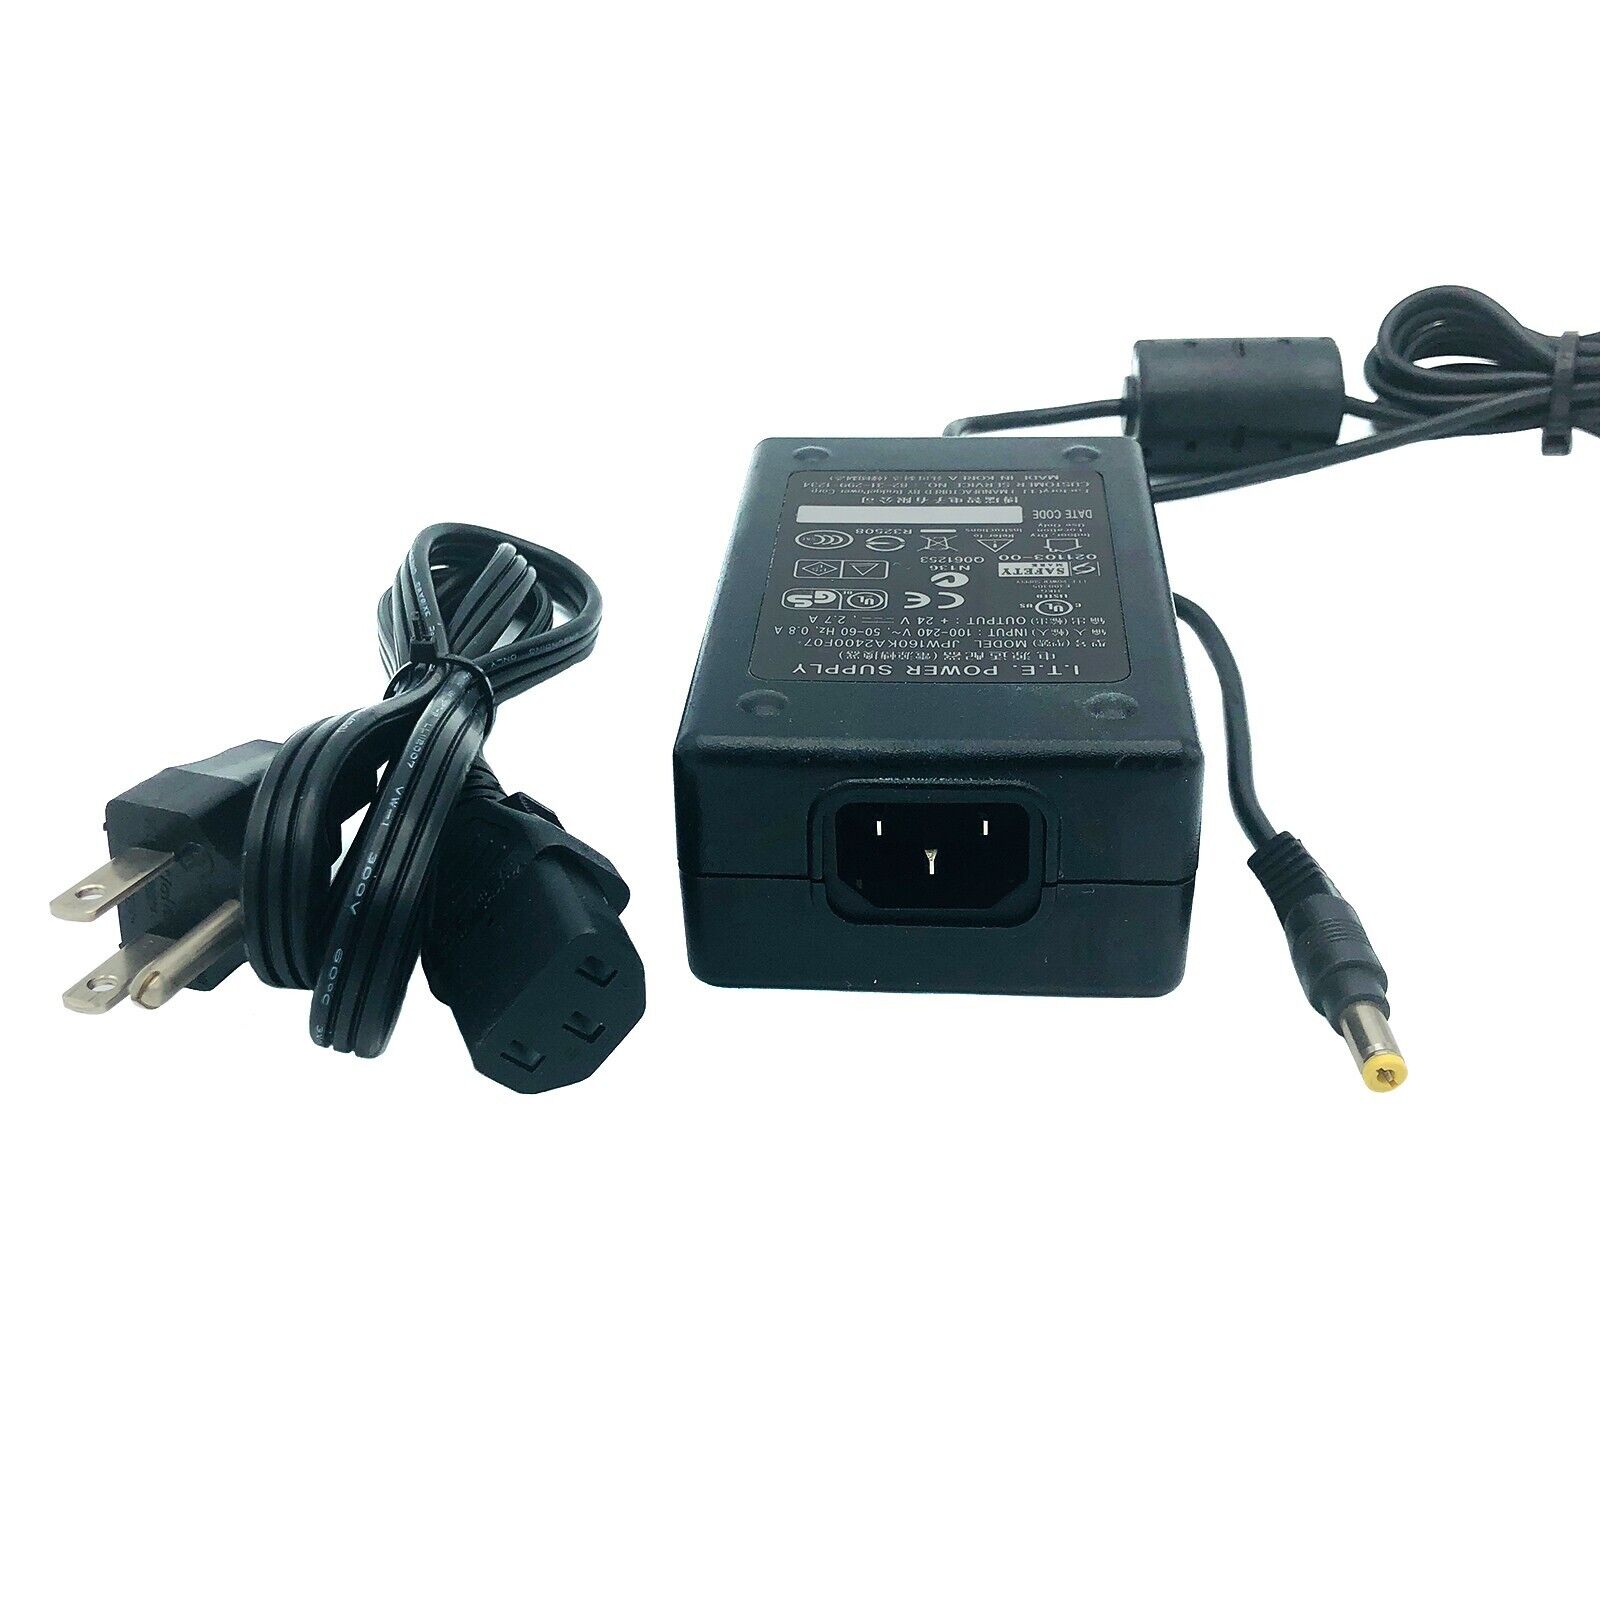 Original I.T.E 24V AC Adapter for Magicard Enduro 3E Enduro+ Card Printer w/Cord